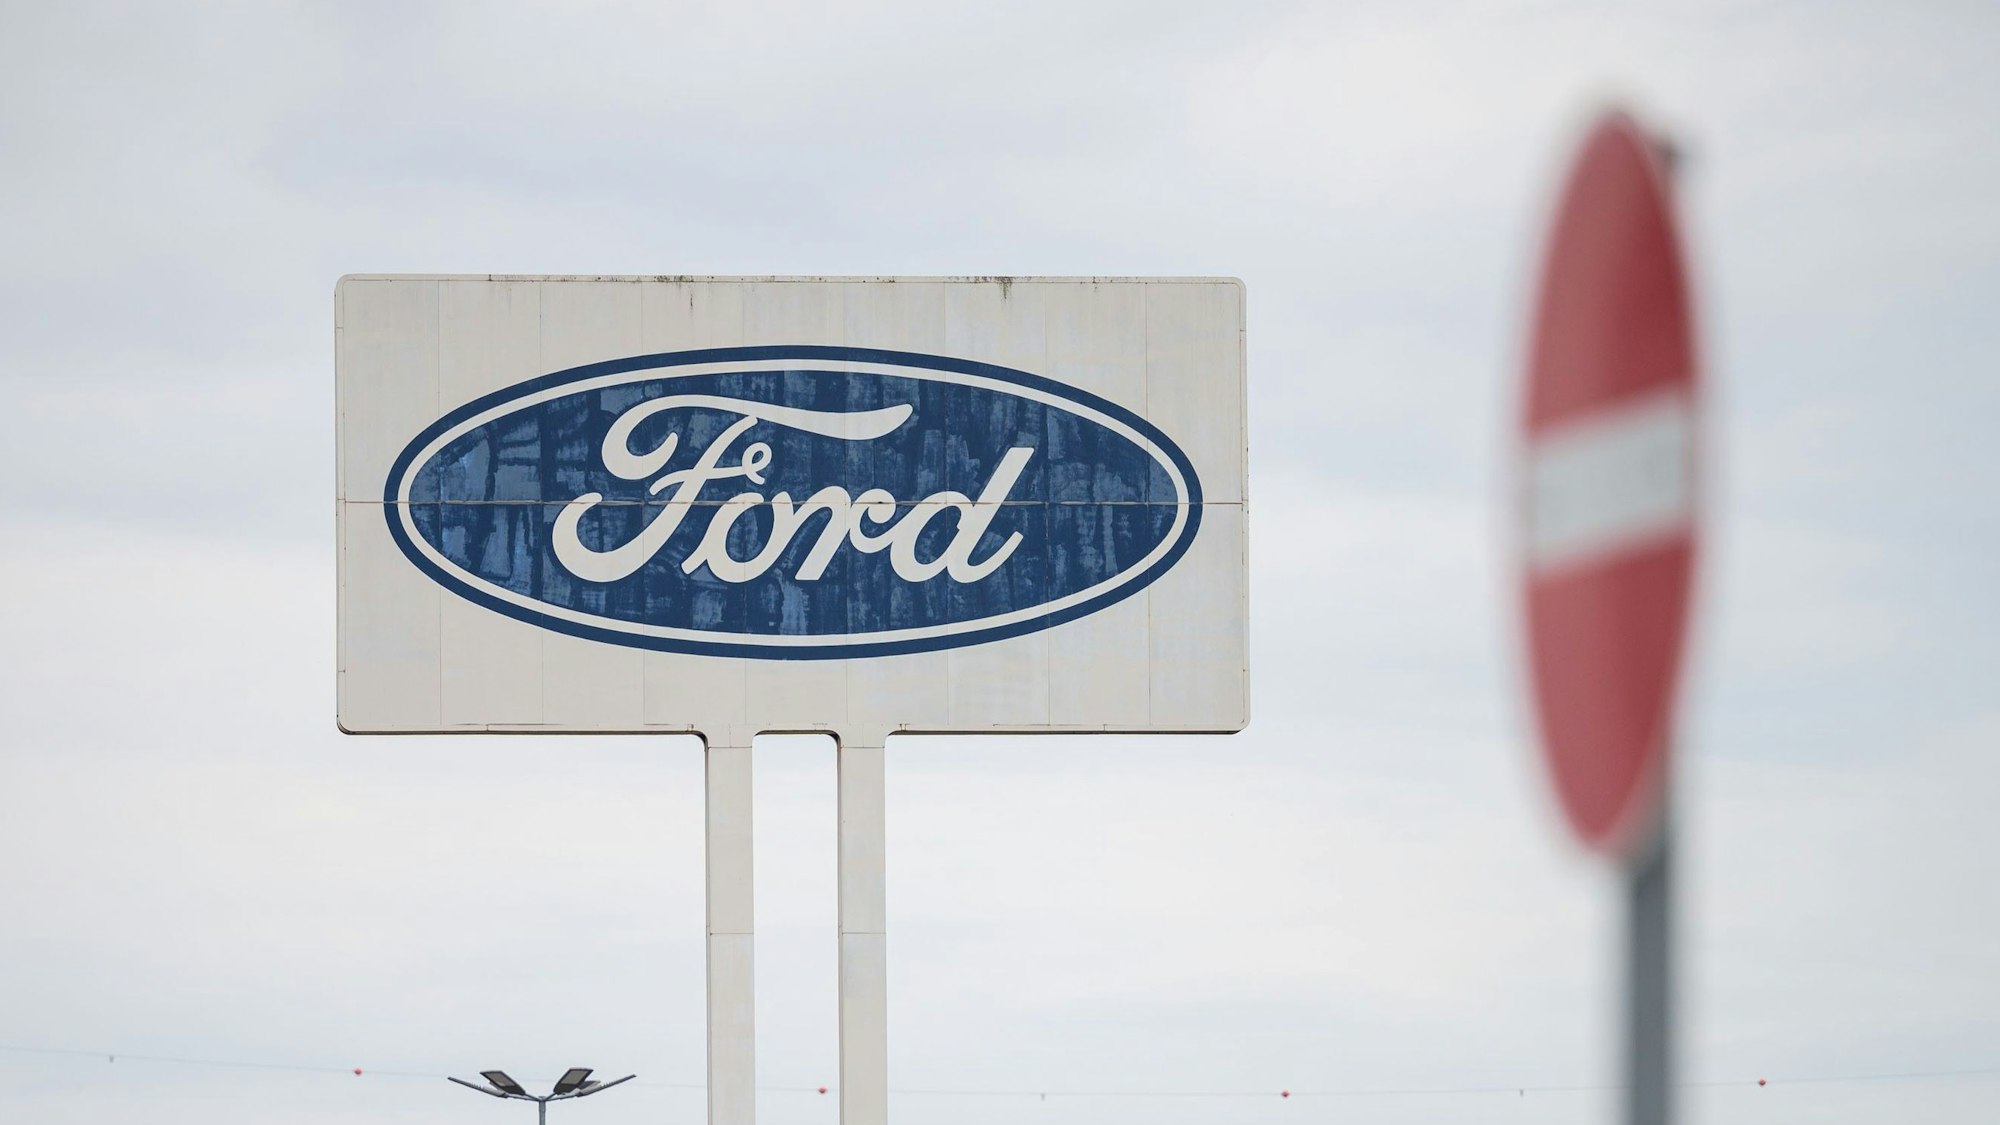 Das große Logo von Ford, das auf dem Parkplatz des Werks Saarlouis steht, mit einem Durchfahrt Verboten Schild davor.